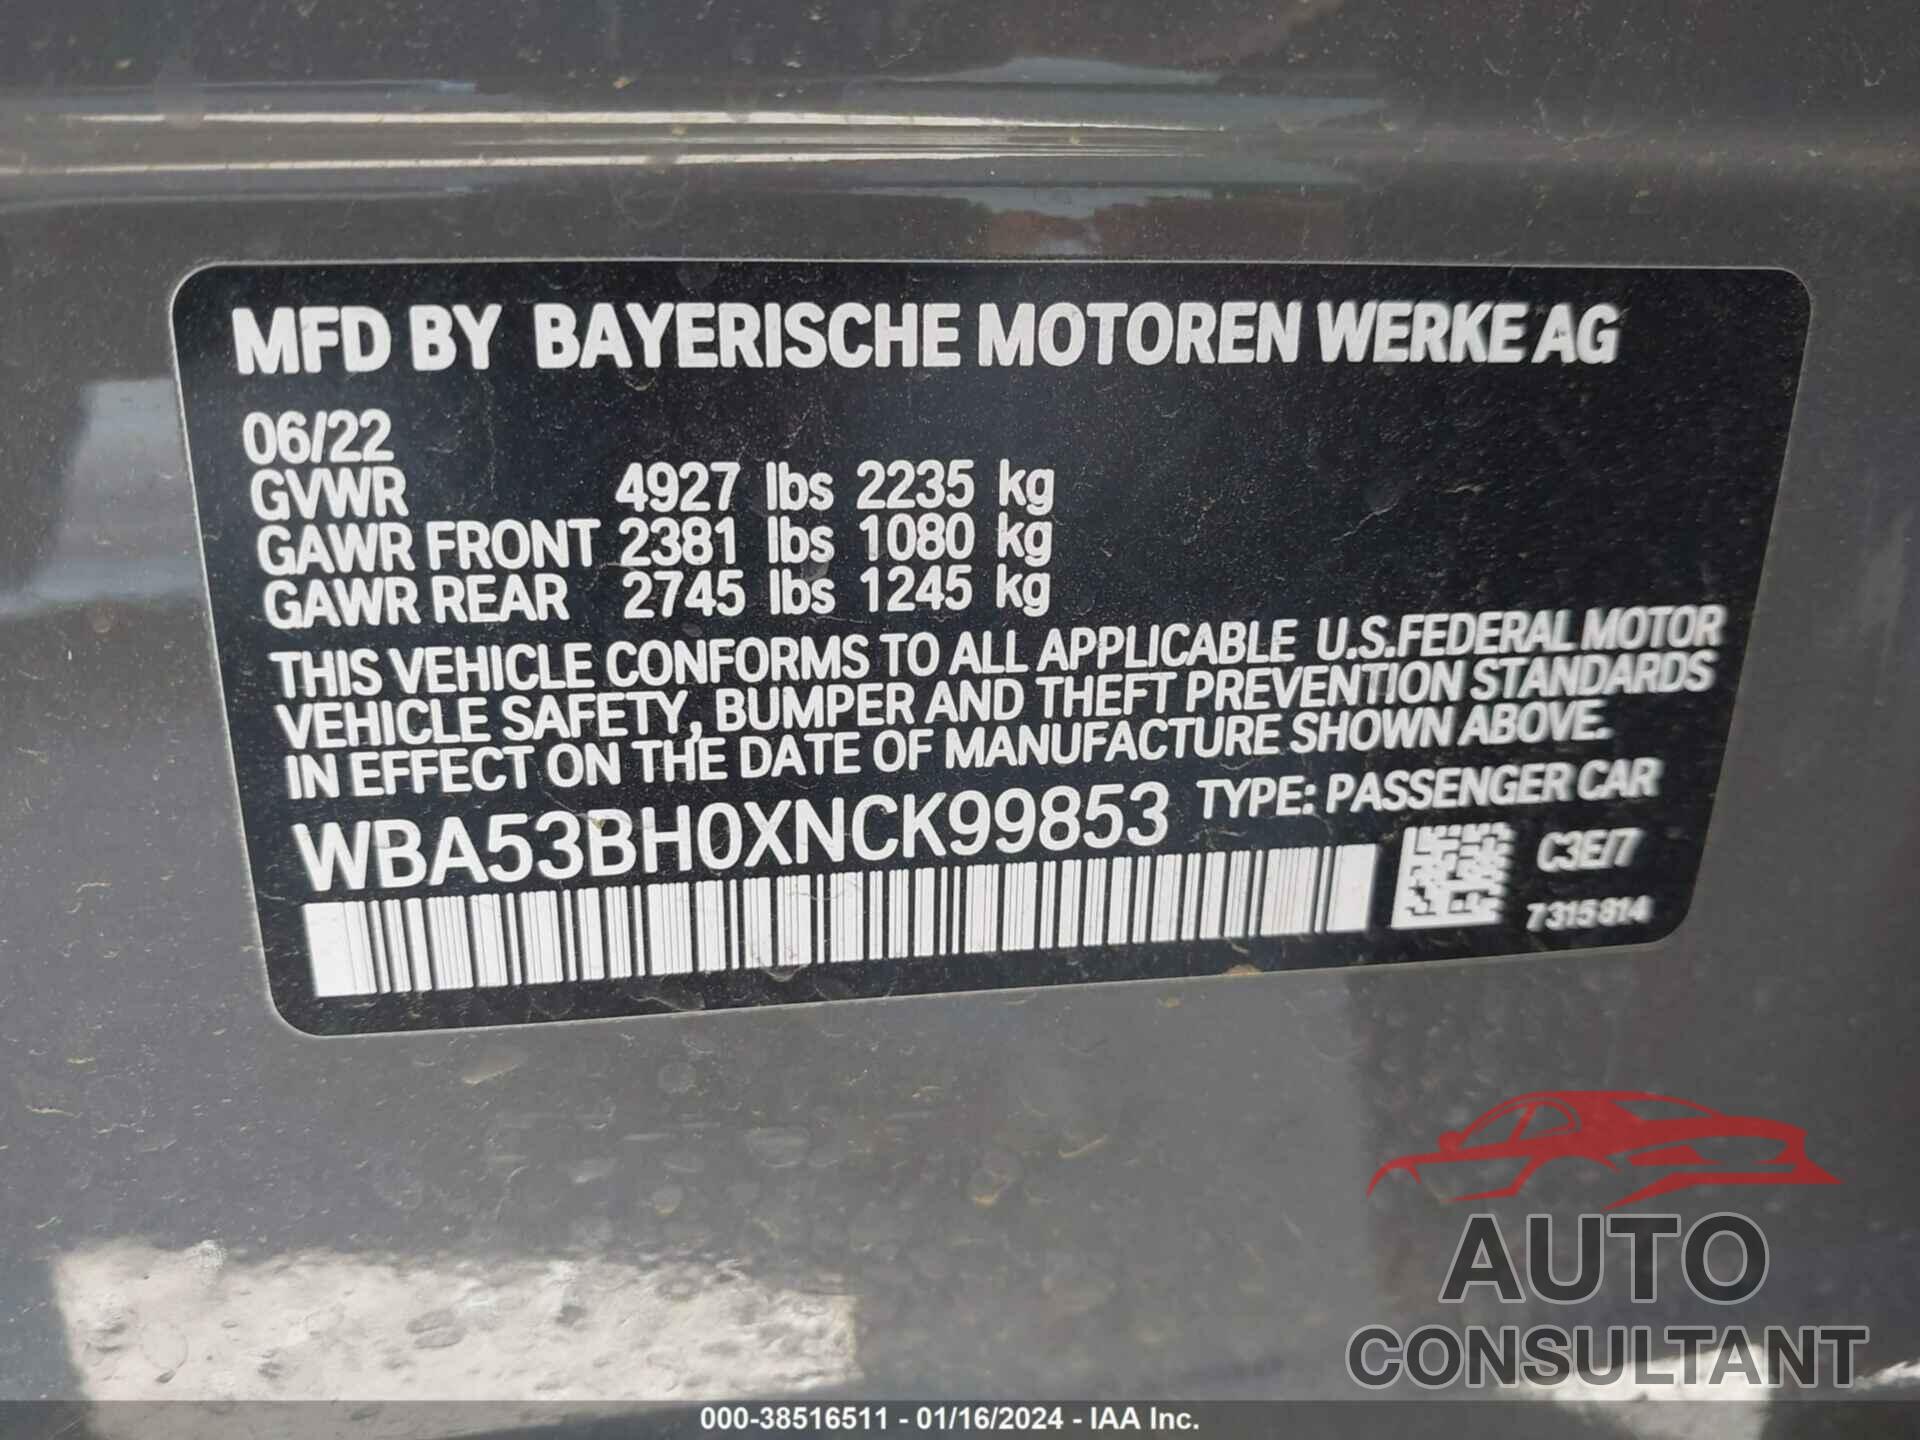 BMW 530I 2022 - WBA53BH0XNCK99853